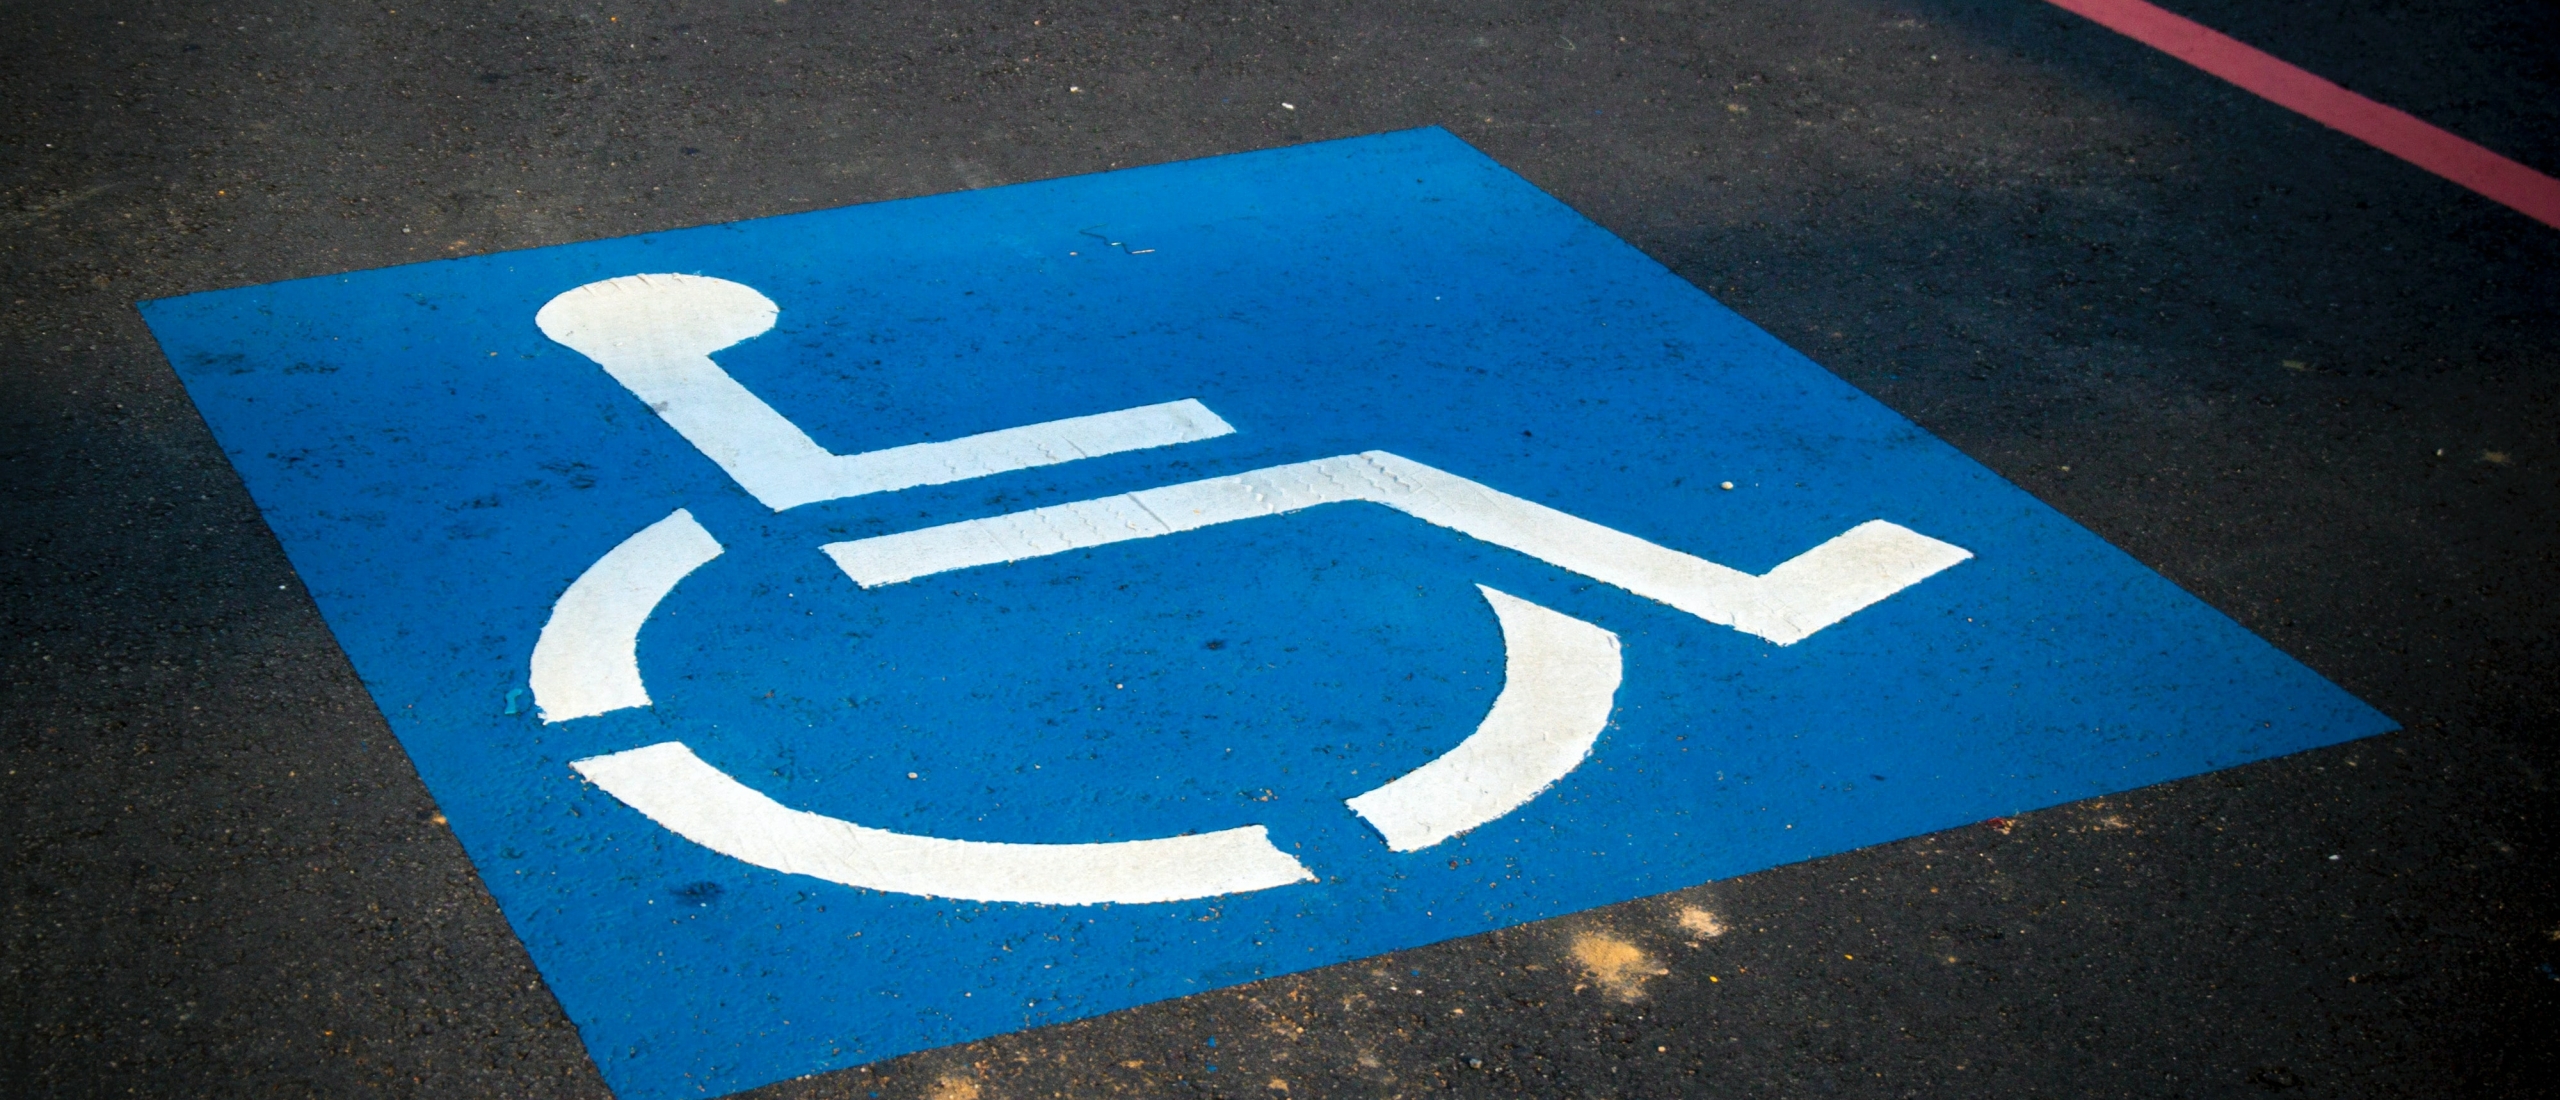 De gehandicaptenparkeerkaart: kom ik daarvoor in aanmerking?